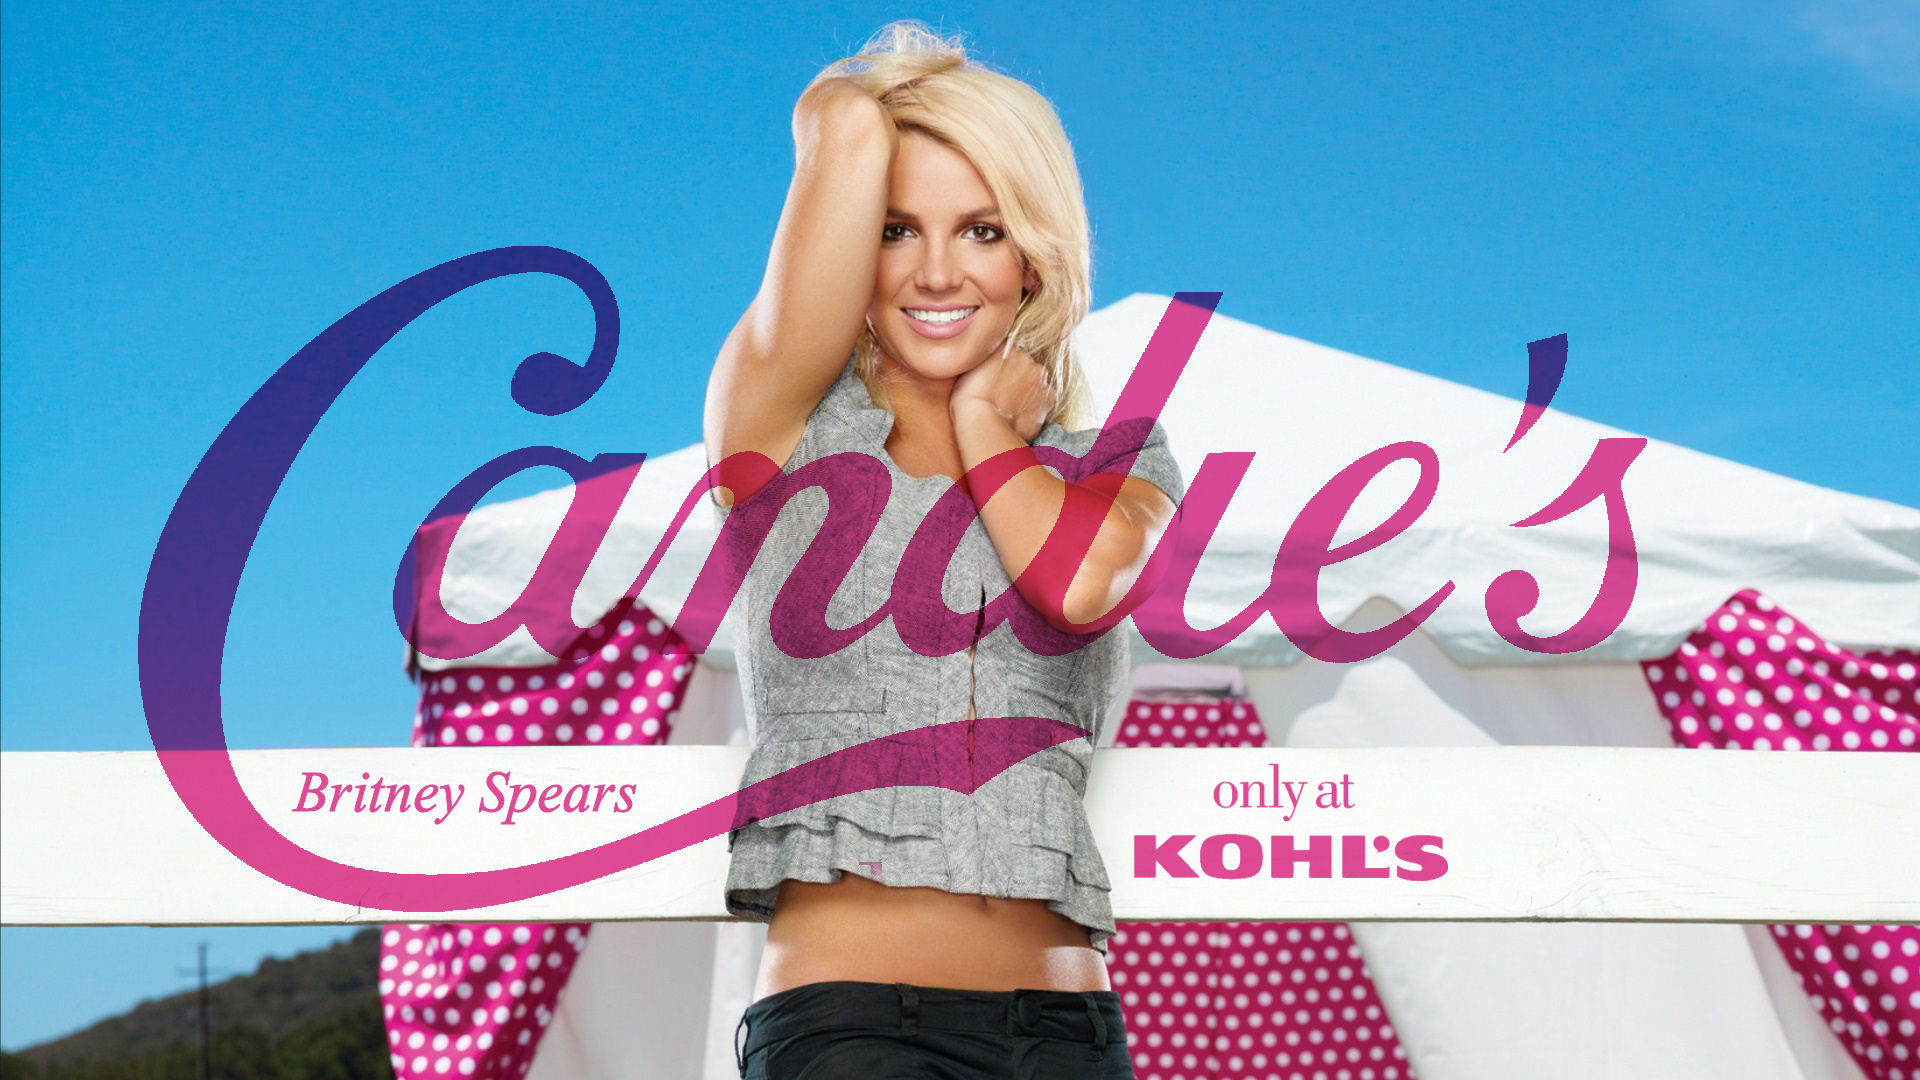 Britney Spears Candie's - Britney Spears Wallpaper (37329610) - Fanpop